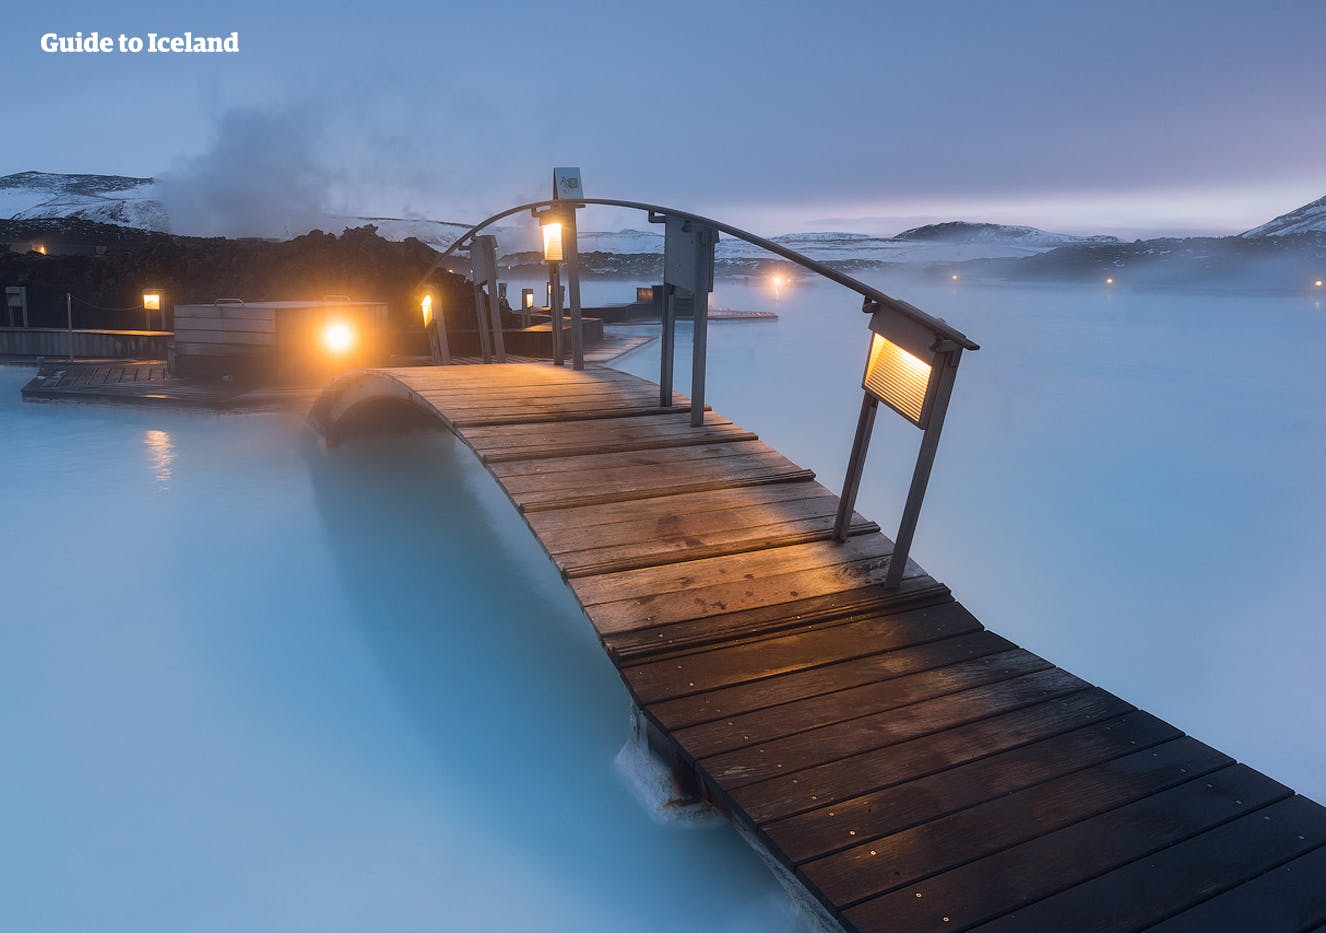 Juste après avoir atterri en Islande, vous pouvez aller vous détendre dans les eaux azurées du spa géothermal du Blue Lagoon.